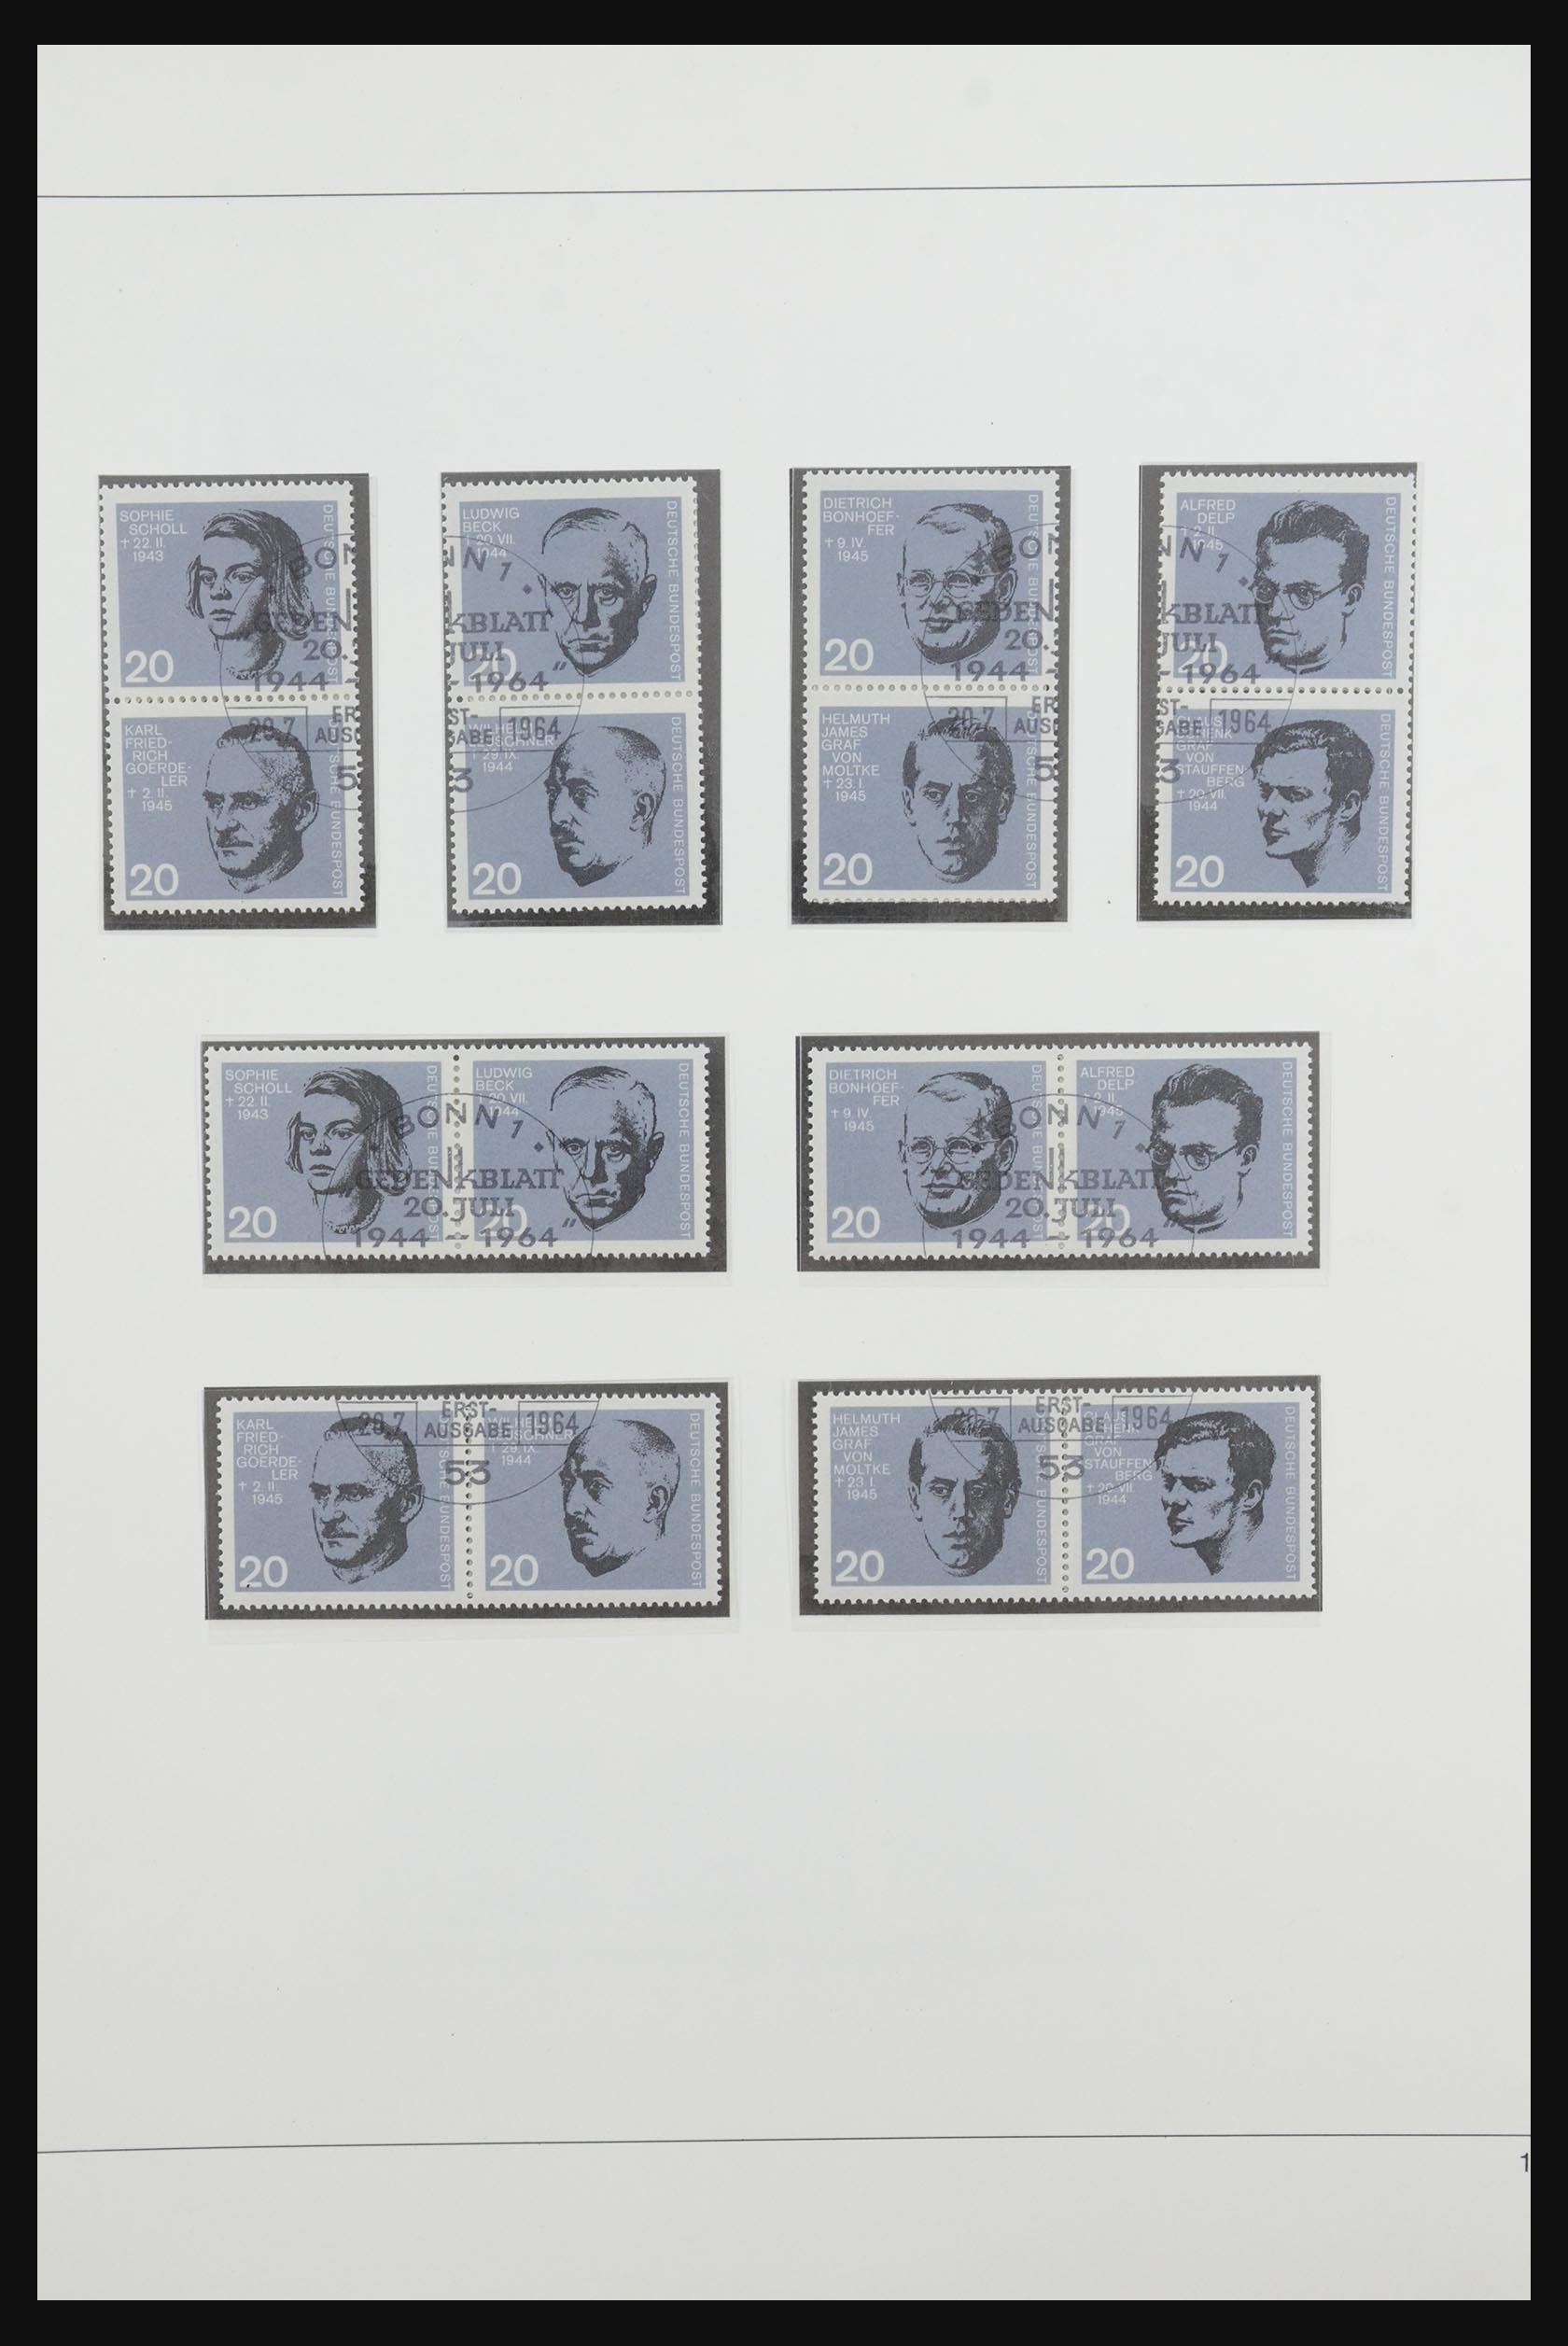 31842 024 - 31842 Bundespost combinations 1951-2003.